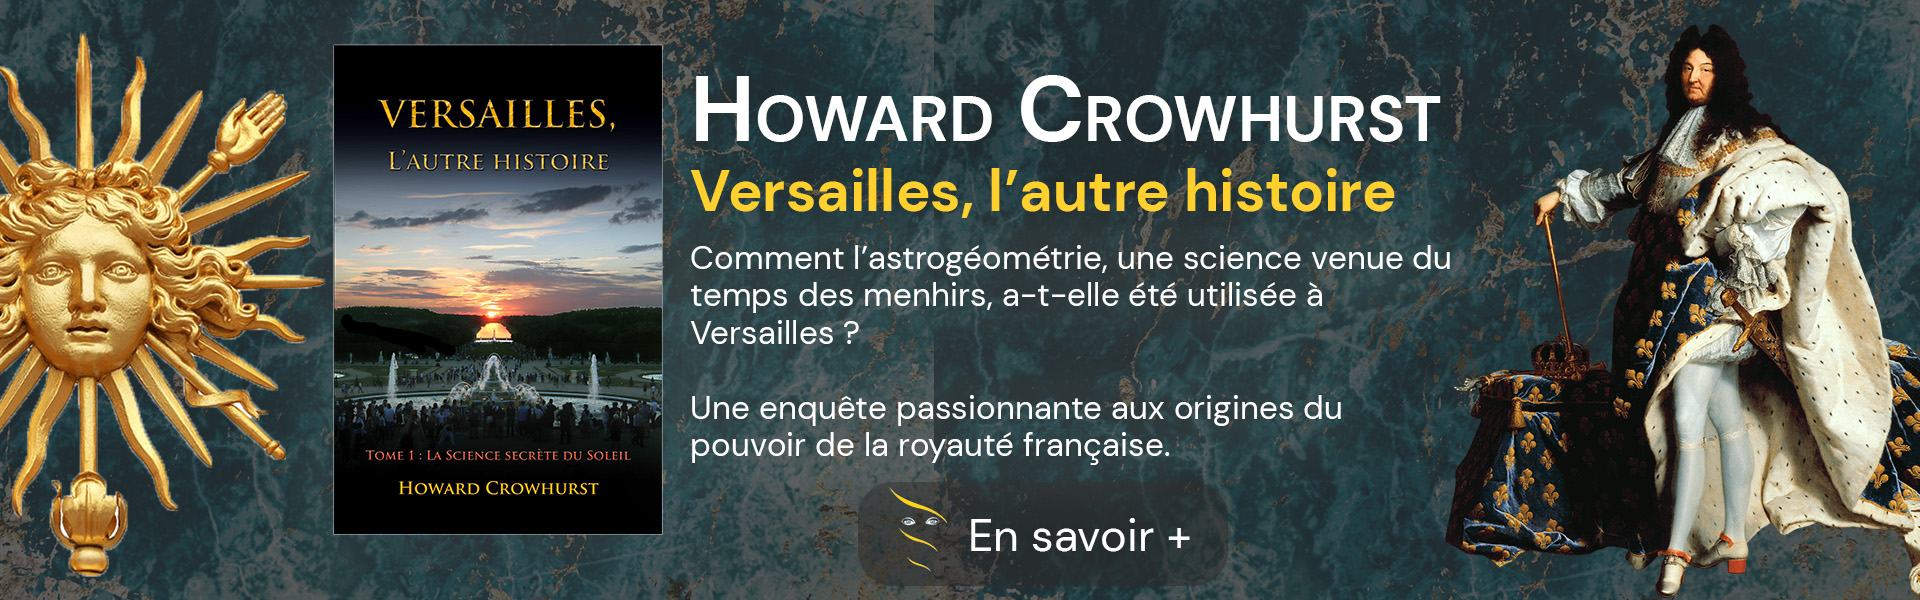 Présentation et couverture du livre Versailles, l'autre histoire de Howard Crowhurst